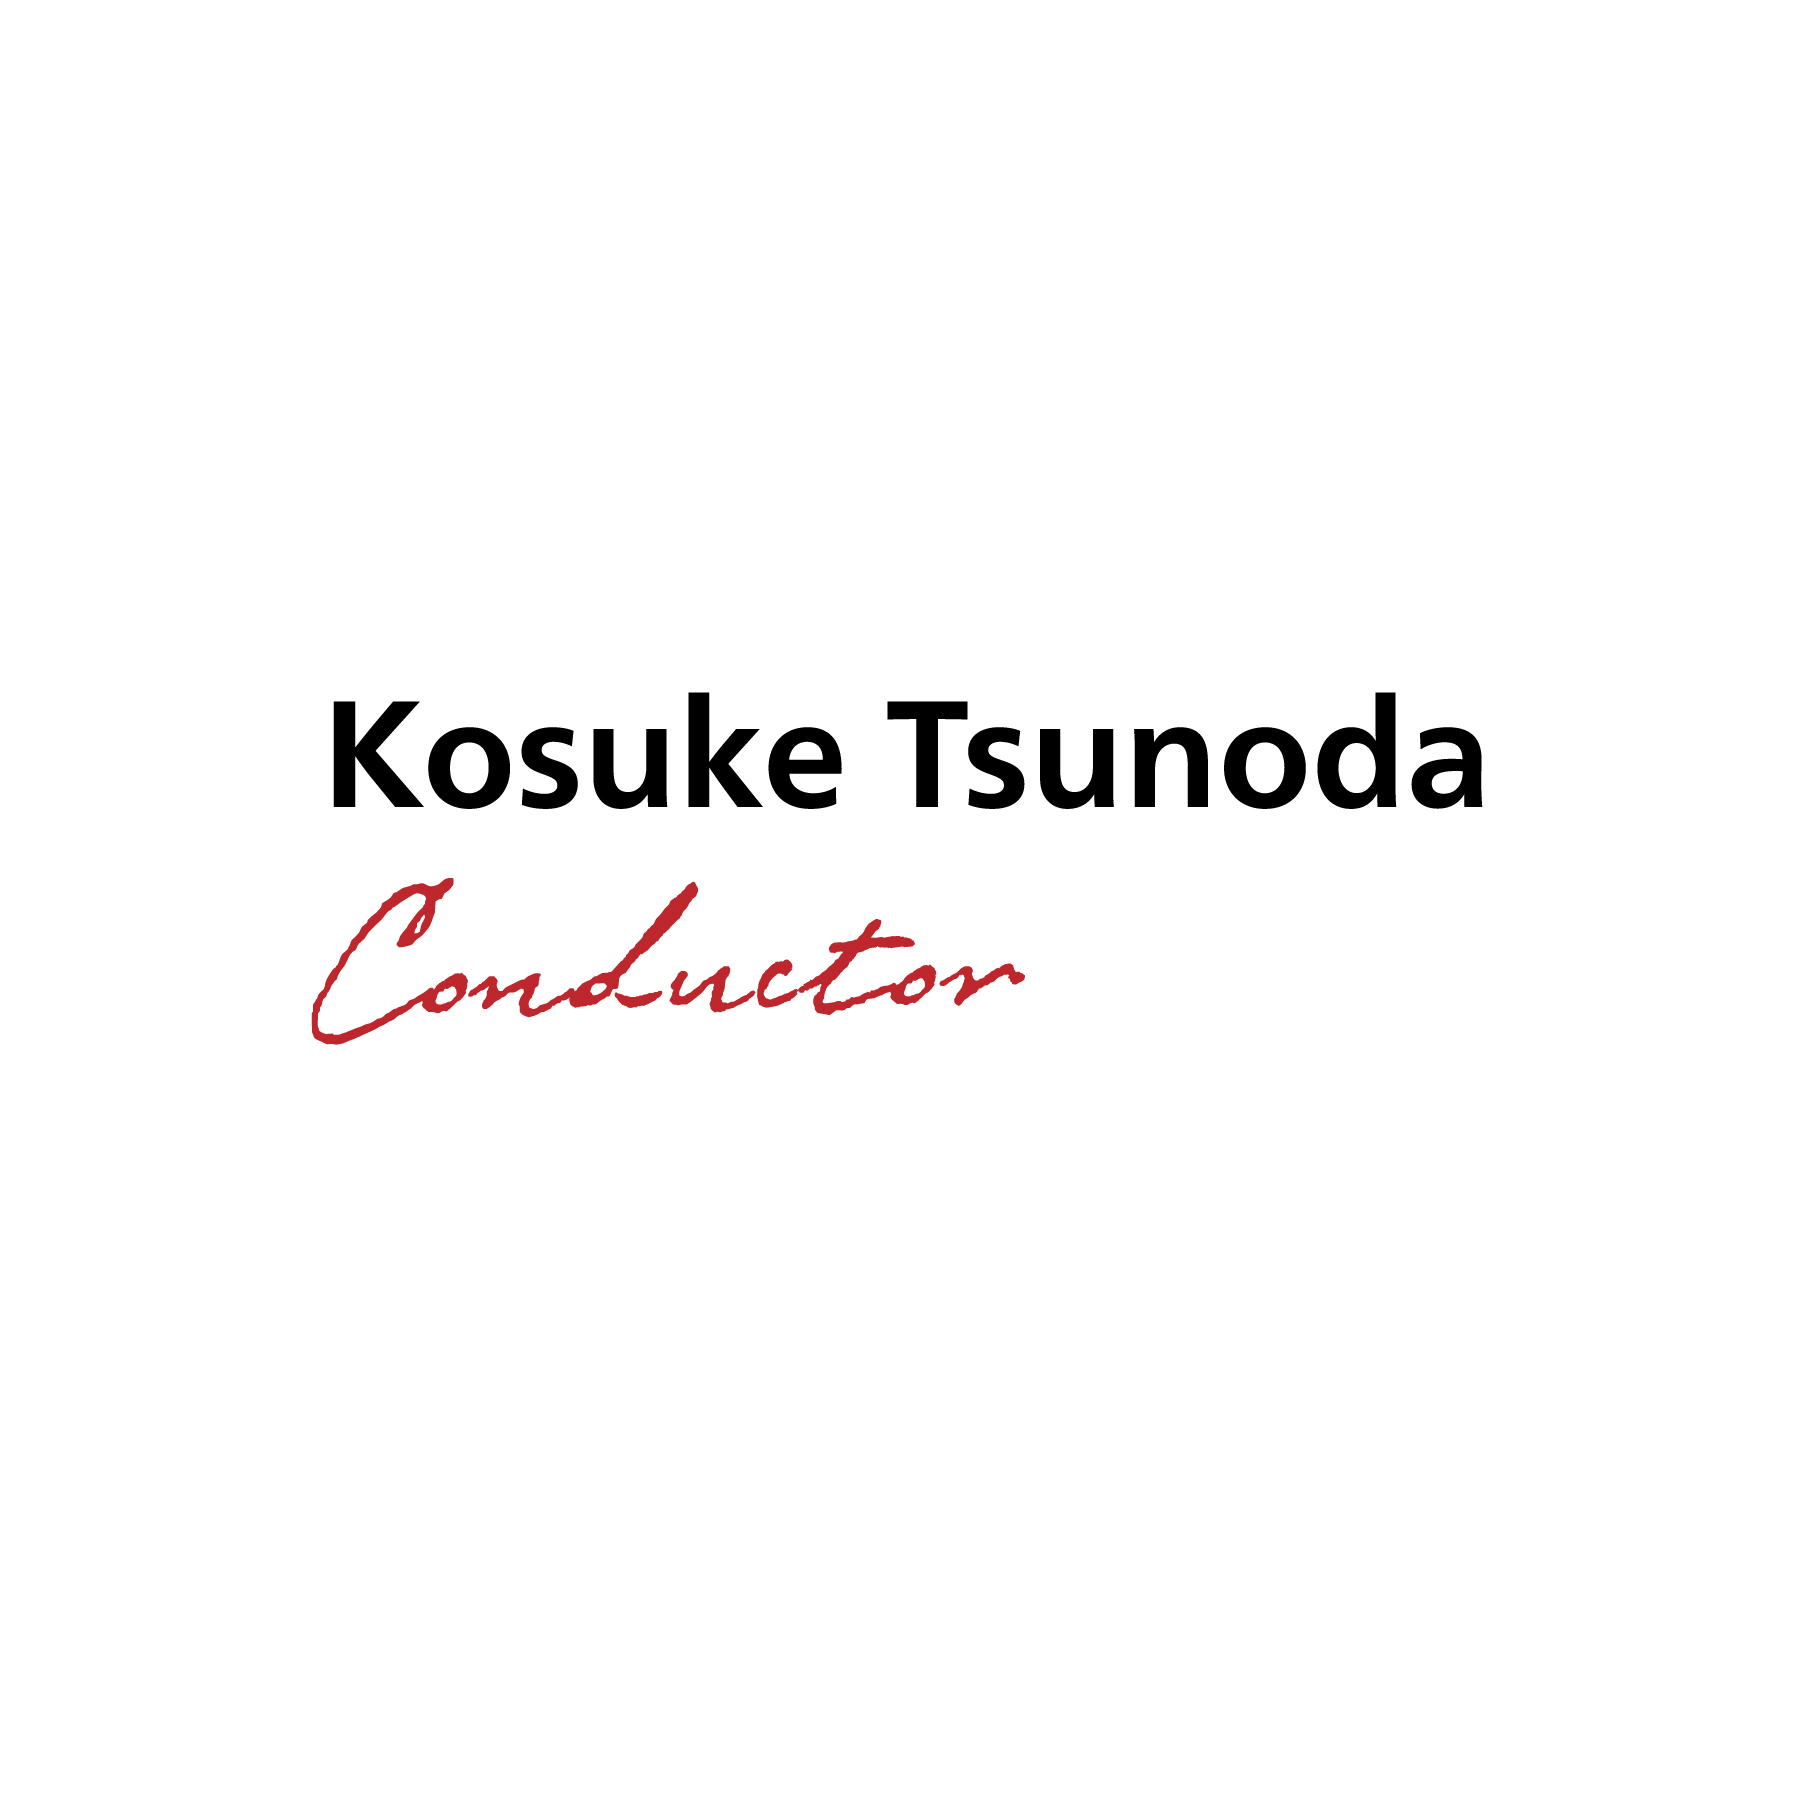 指揮者 角田鋼亮｜Conductor, Kosuke Tsunoda｜オフィシャル・ウェブサイト｜ロゴシンボル